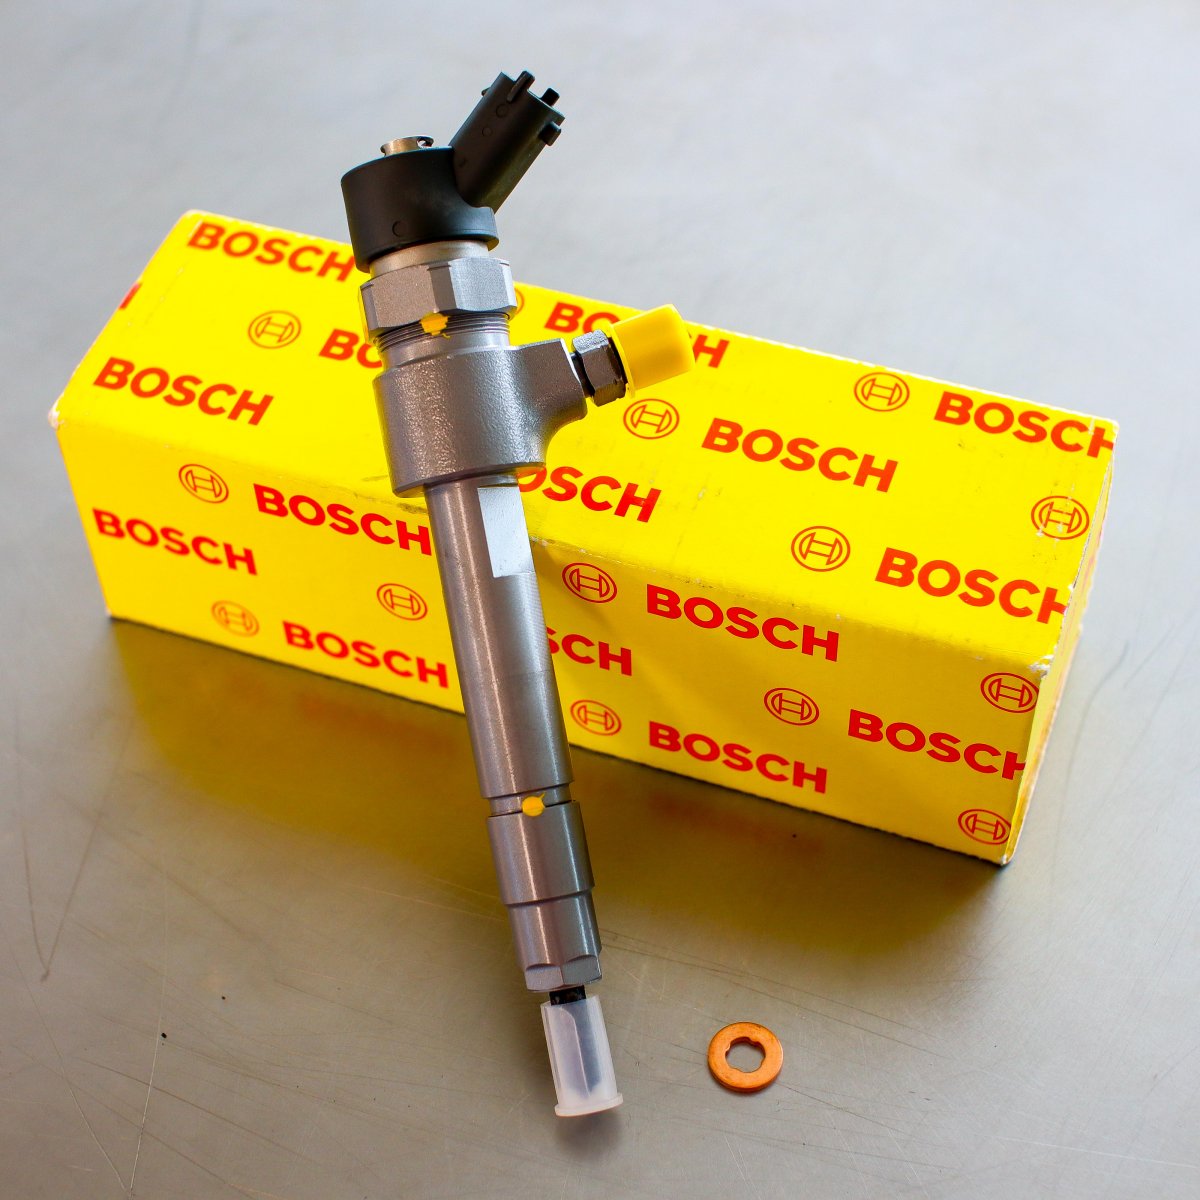 Wtryskiwacz Bosch naprawiony gotowy do wysyłki do Klienta na gwarancji - niska cena